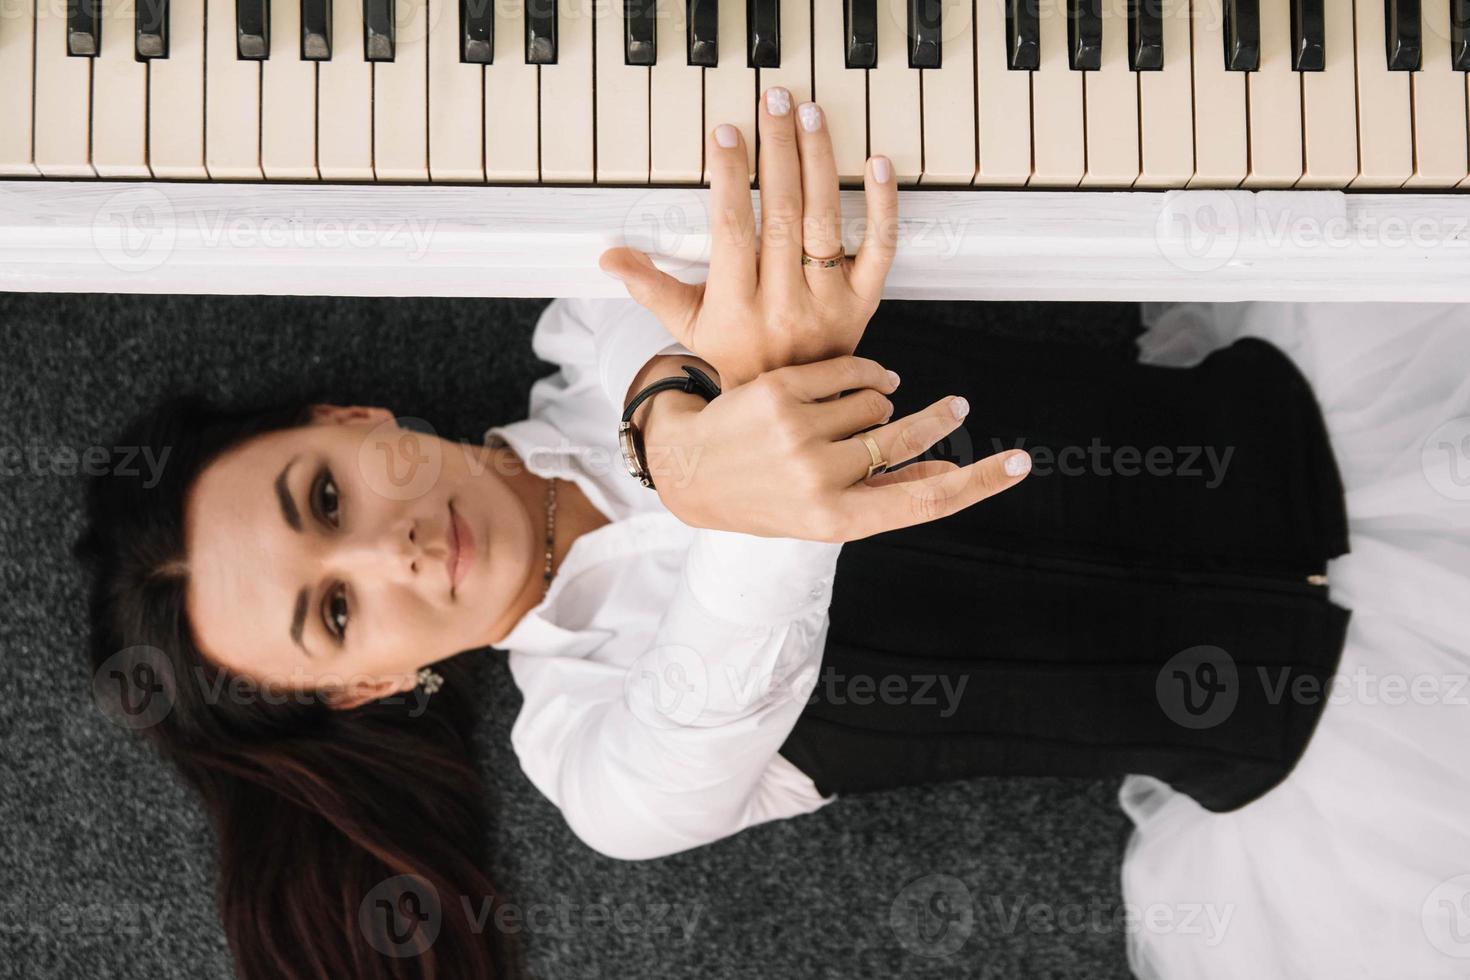 mooie vrouw gekleed in een witte jurk met een zwart korset ligt op de vloer in de buurt van witte piano die op de toetsen speelt. plaats voor tekst of reclame. uitzicht van boven foto